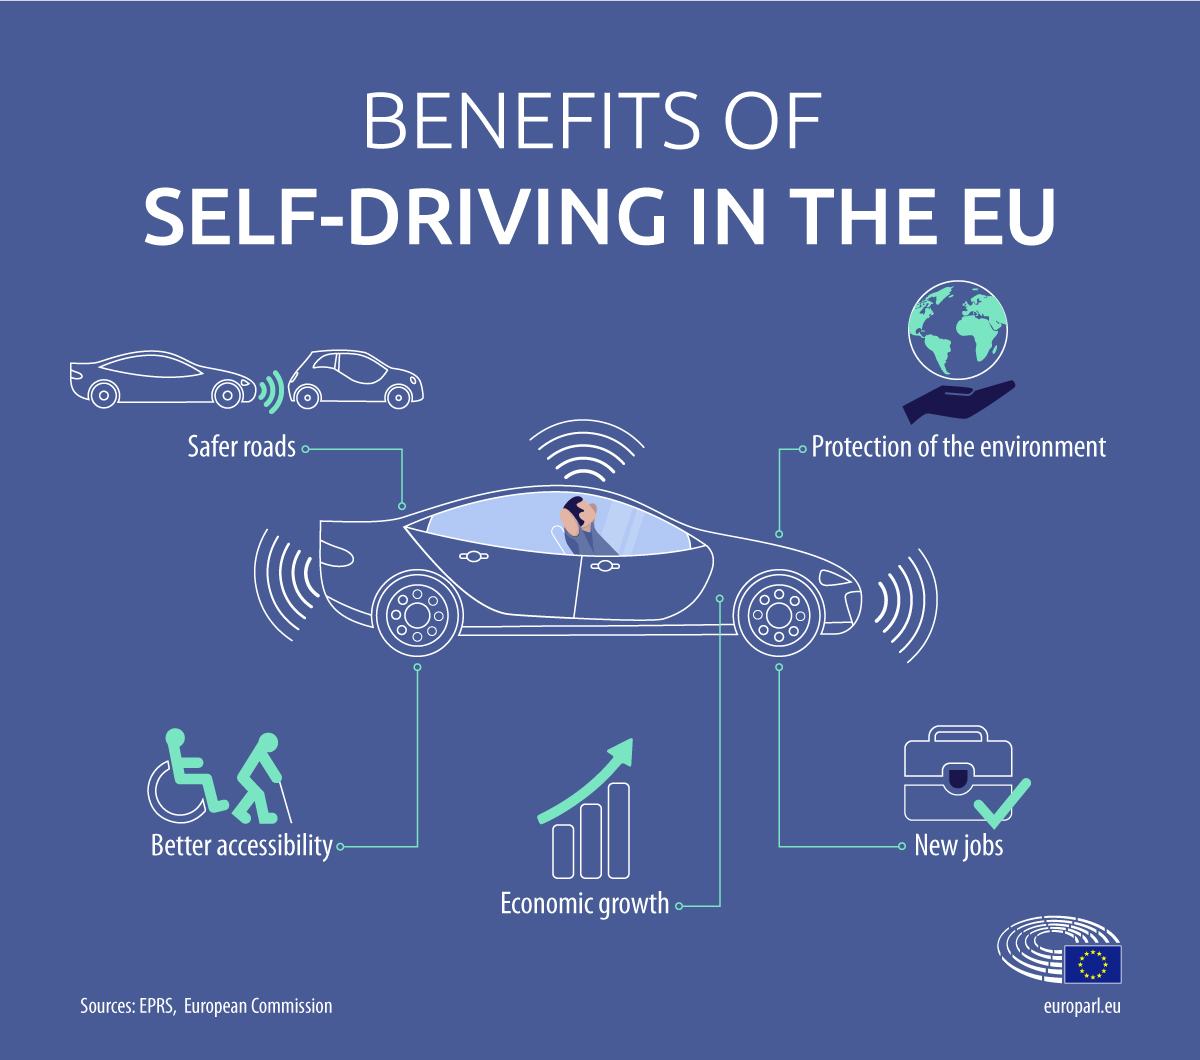 A közlekedésbiztonság javítását és az önvezető járművek használatát lehetővé tevő uniós szabályok léptek érvénybe